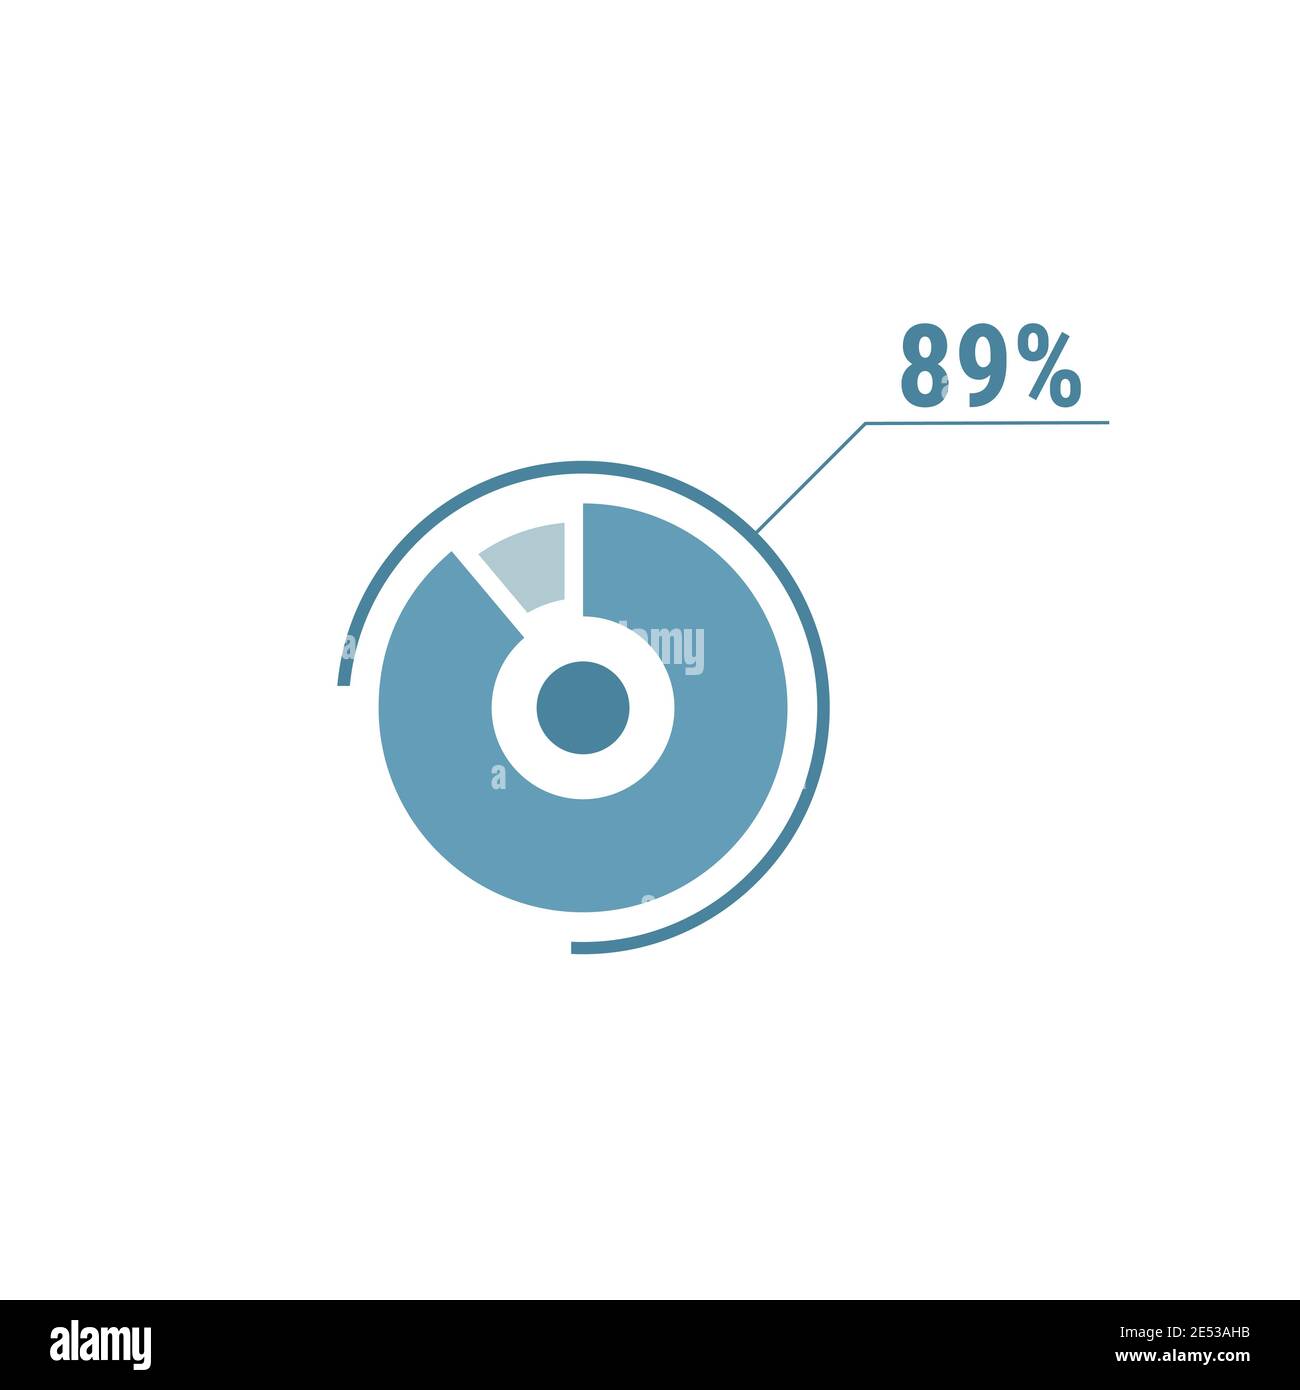 Neunundachtzig Prozent Diagramm Kreis, 89 Prozent Kreis Diagramm, Vektor-Design-Illustration, blau auf weißem Hintergrund. Stock Vektor